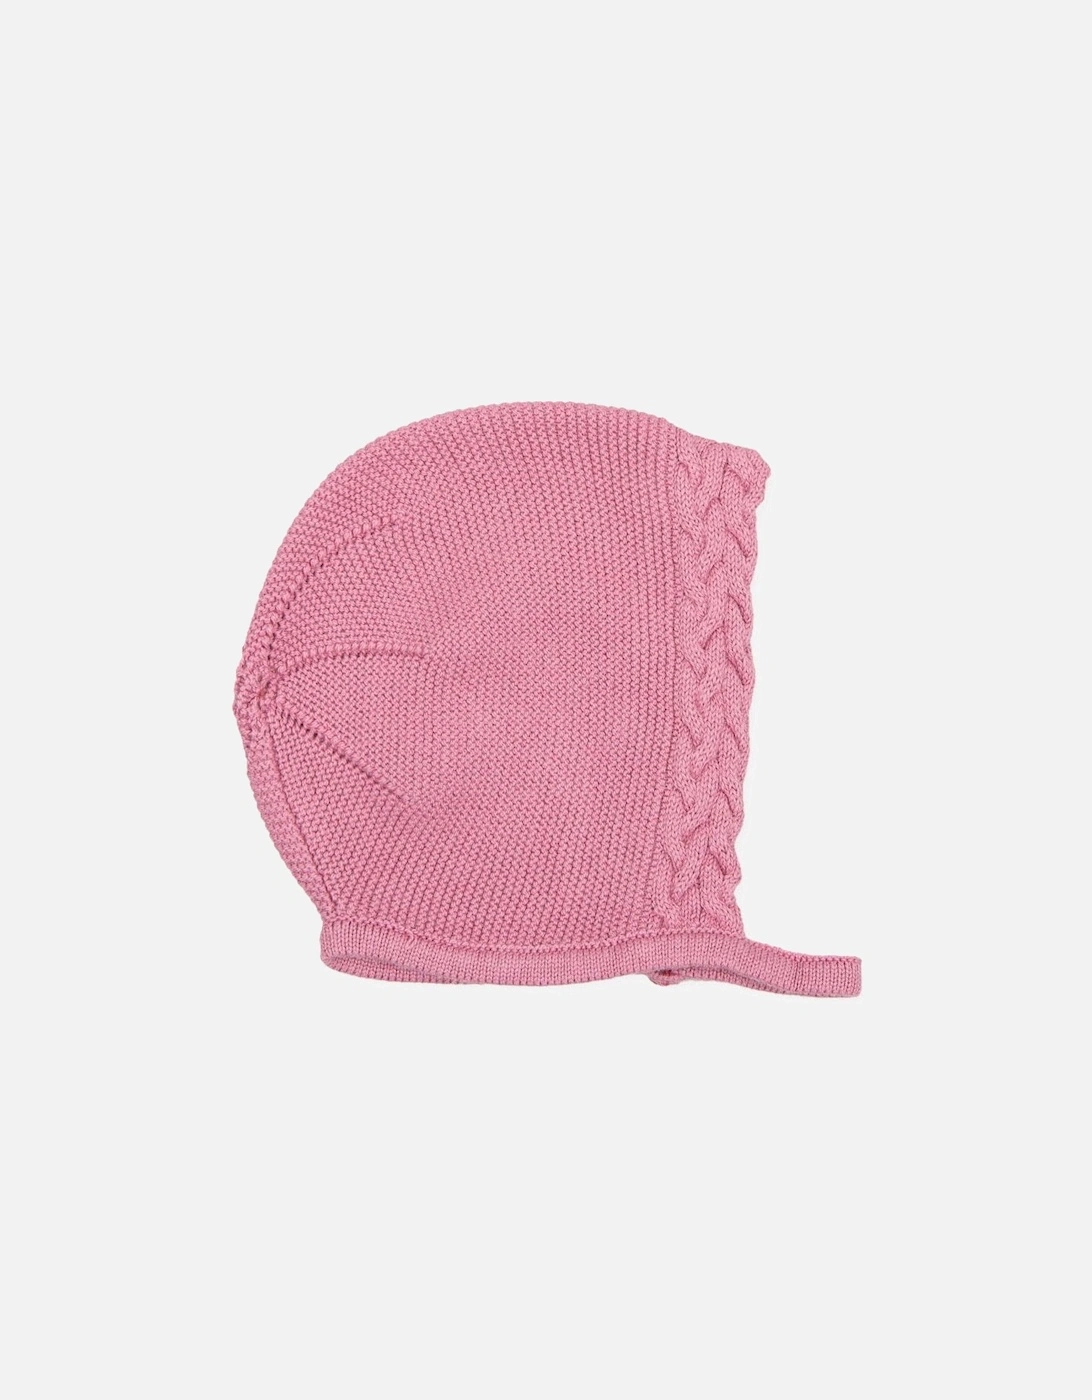 Mauve Knit Bonnet, 2 of 1